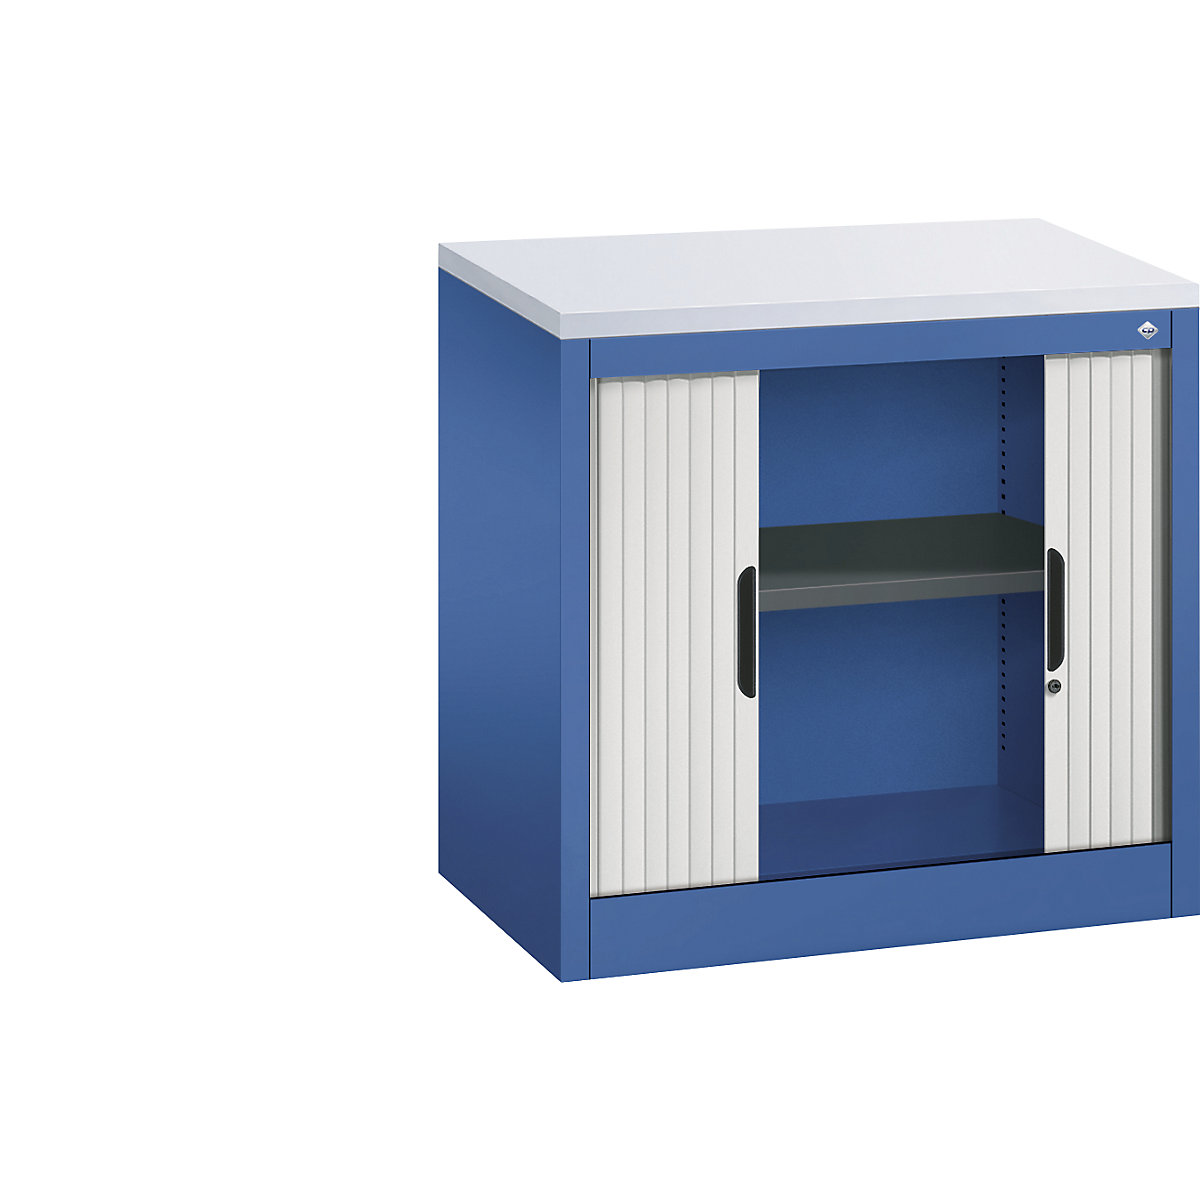 Roller shutter cupboard with horizontal shutter – C+P, HxWxD 720 x 800 x 420 mm, 1 shelf, 1.5 file heights, gentian blue / light grey-4